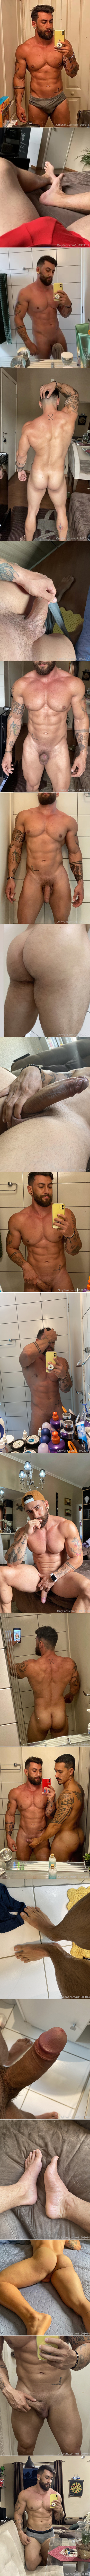 Rafa-Enrique-OnlyFans-Brazilian-Fitness-Model-CrossFit-Bearded-Guy-Male-Feet-Uncut-Cock